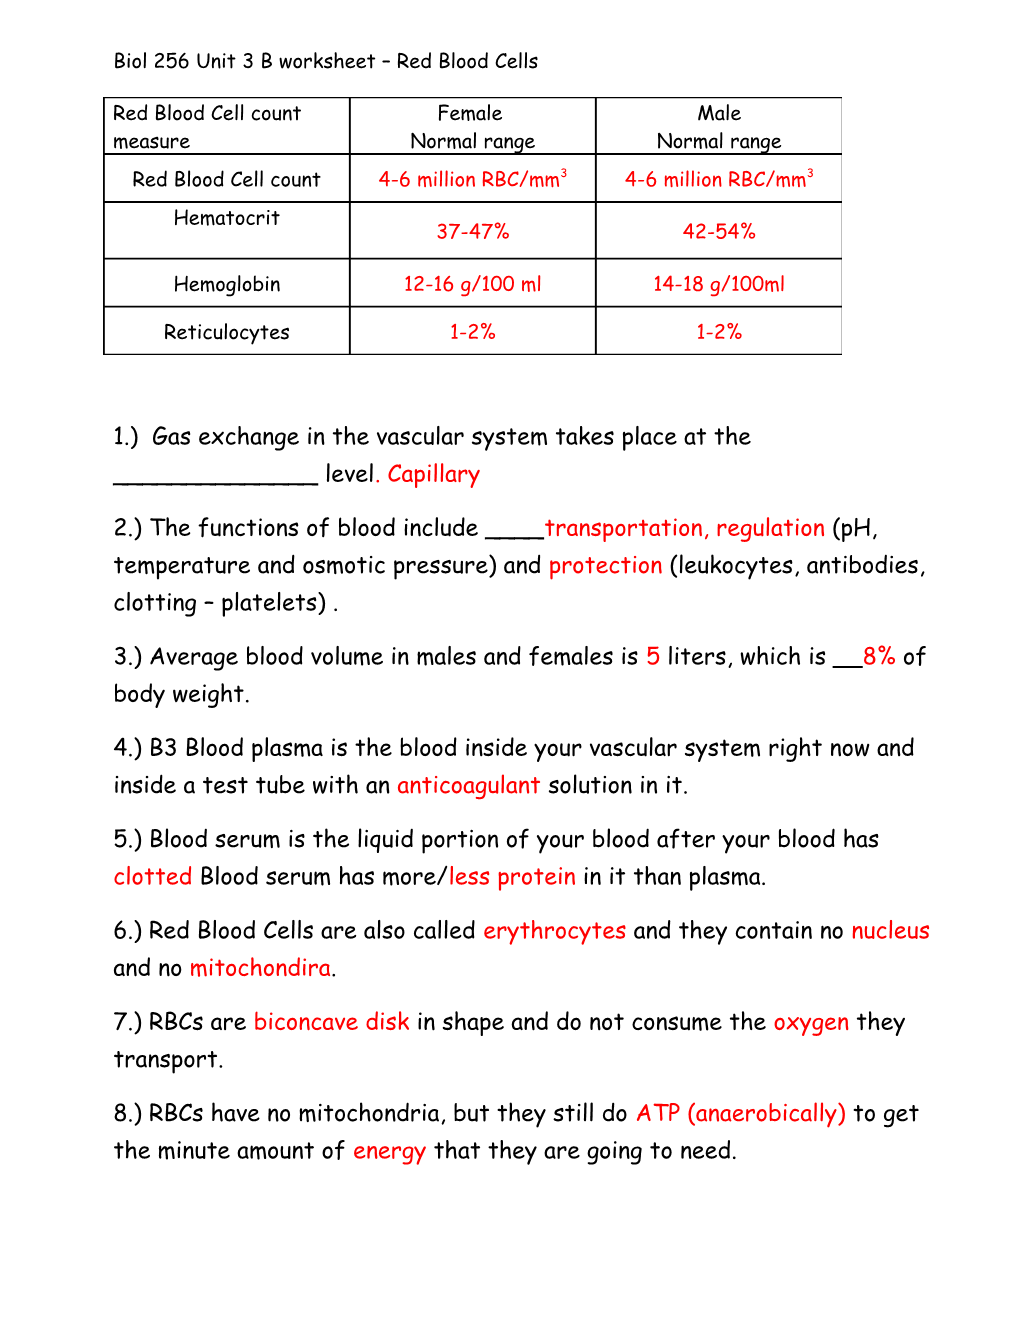 Biol 256 Unit 3 B Worksheet Red Blood Cells